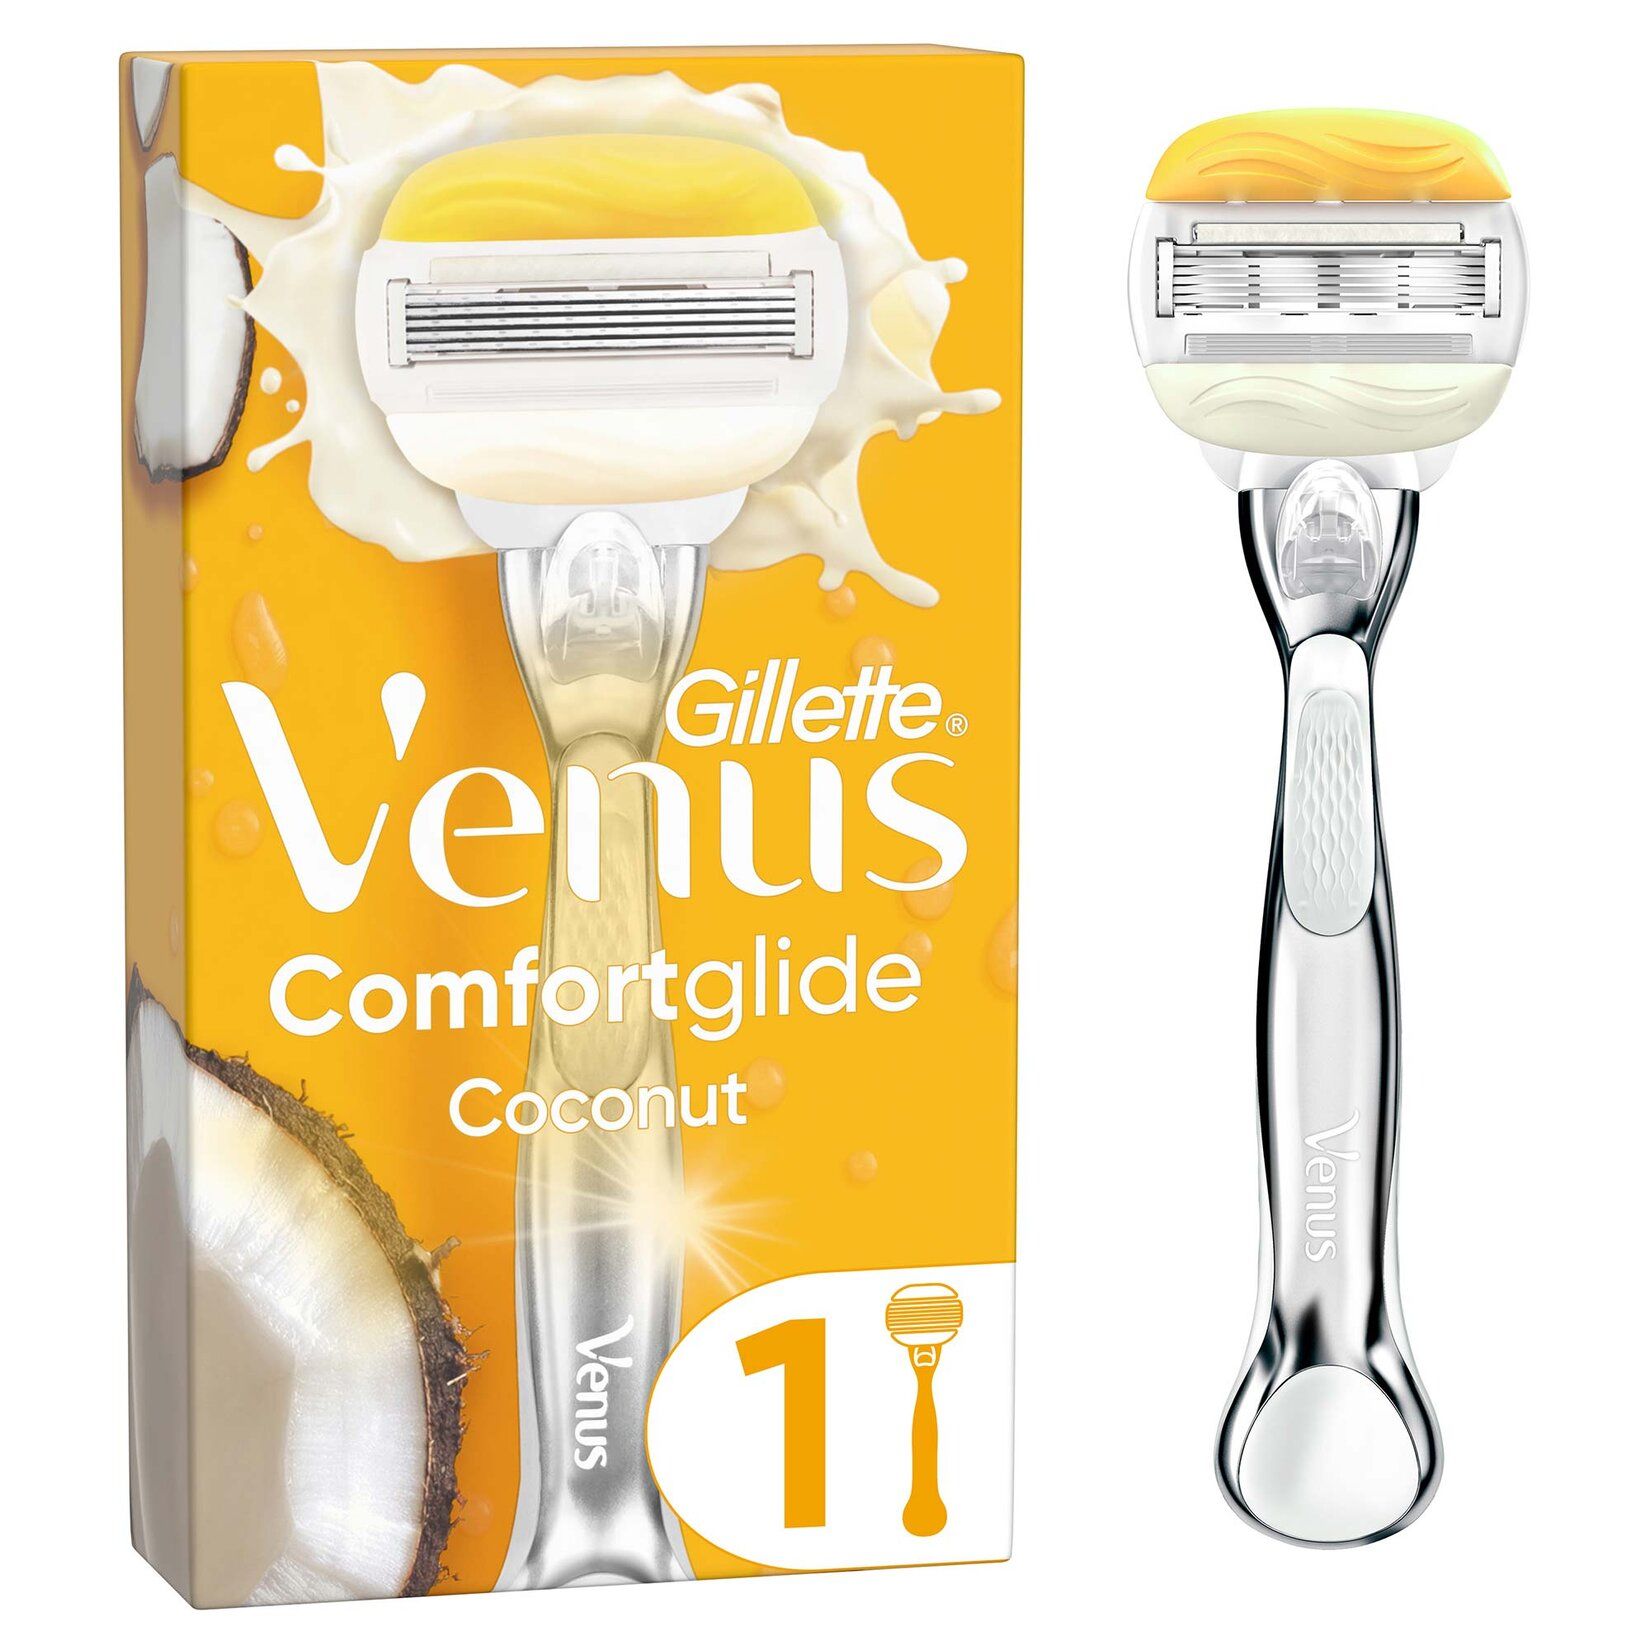 Gillette Venus Comfortglide Olay Tıraş Makinesi + Yedek Başlık